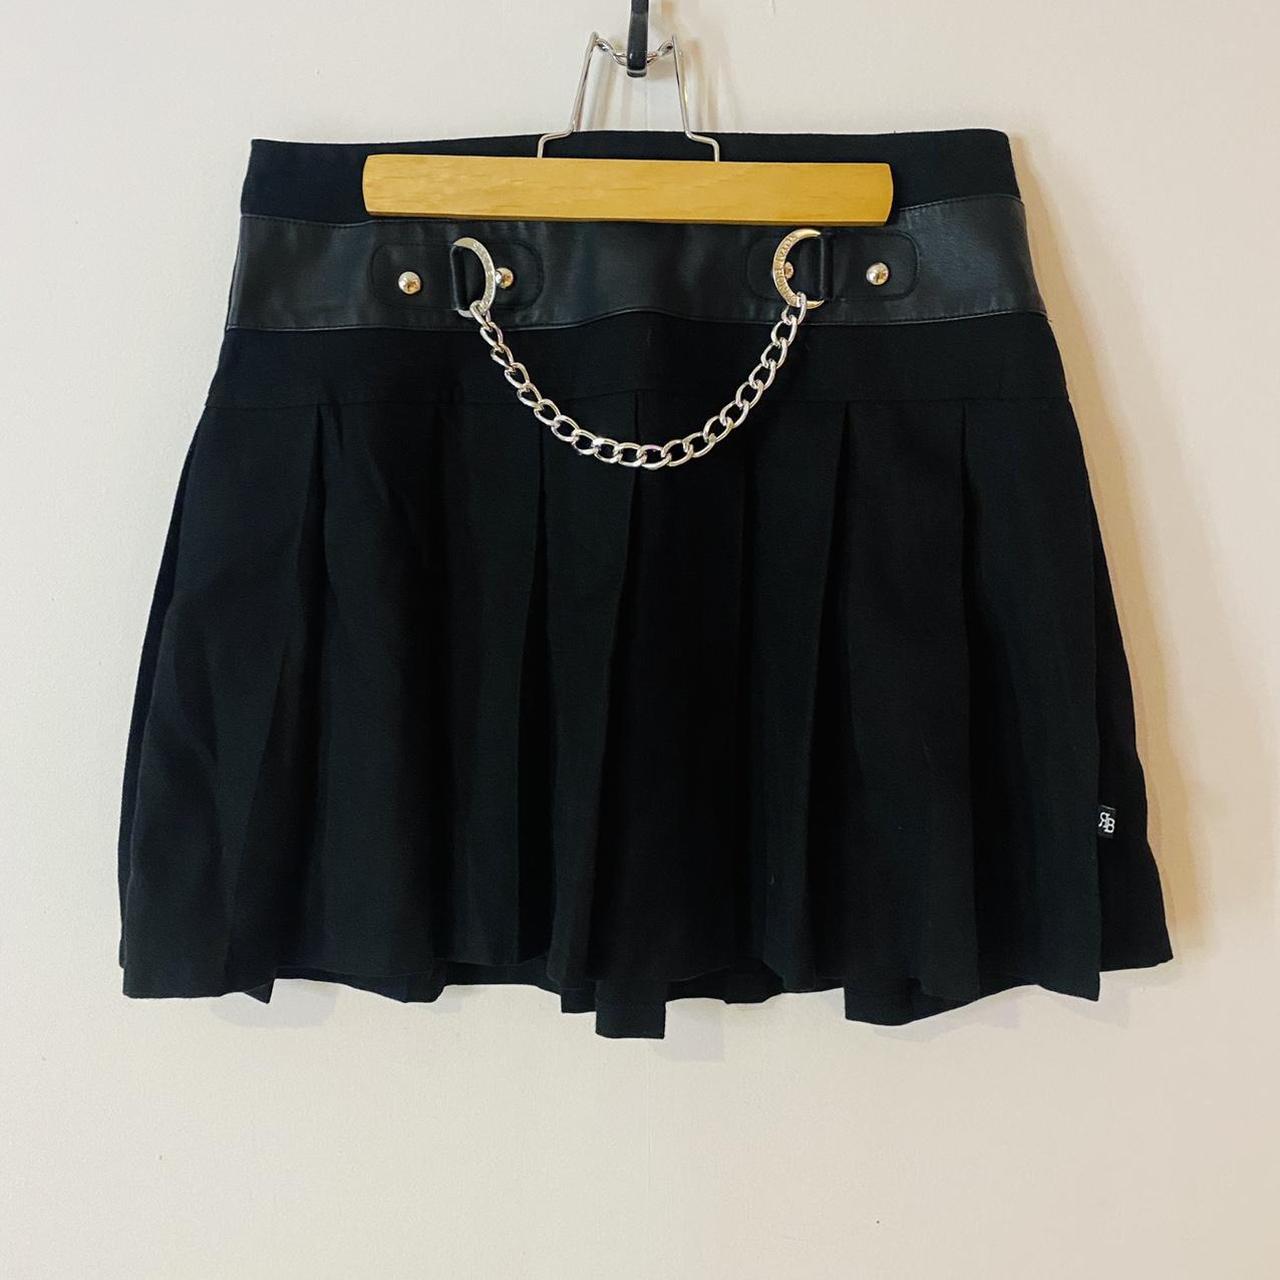 Royal Bones by Daang Goodman chain pleated skirt in... - Depop